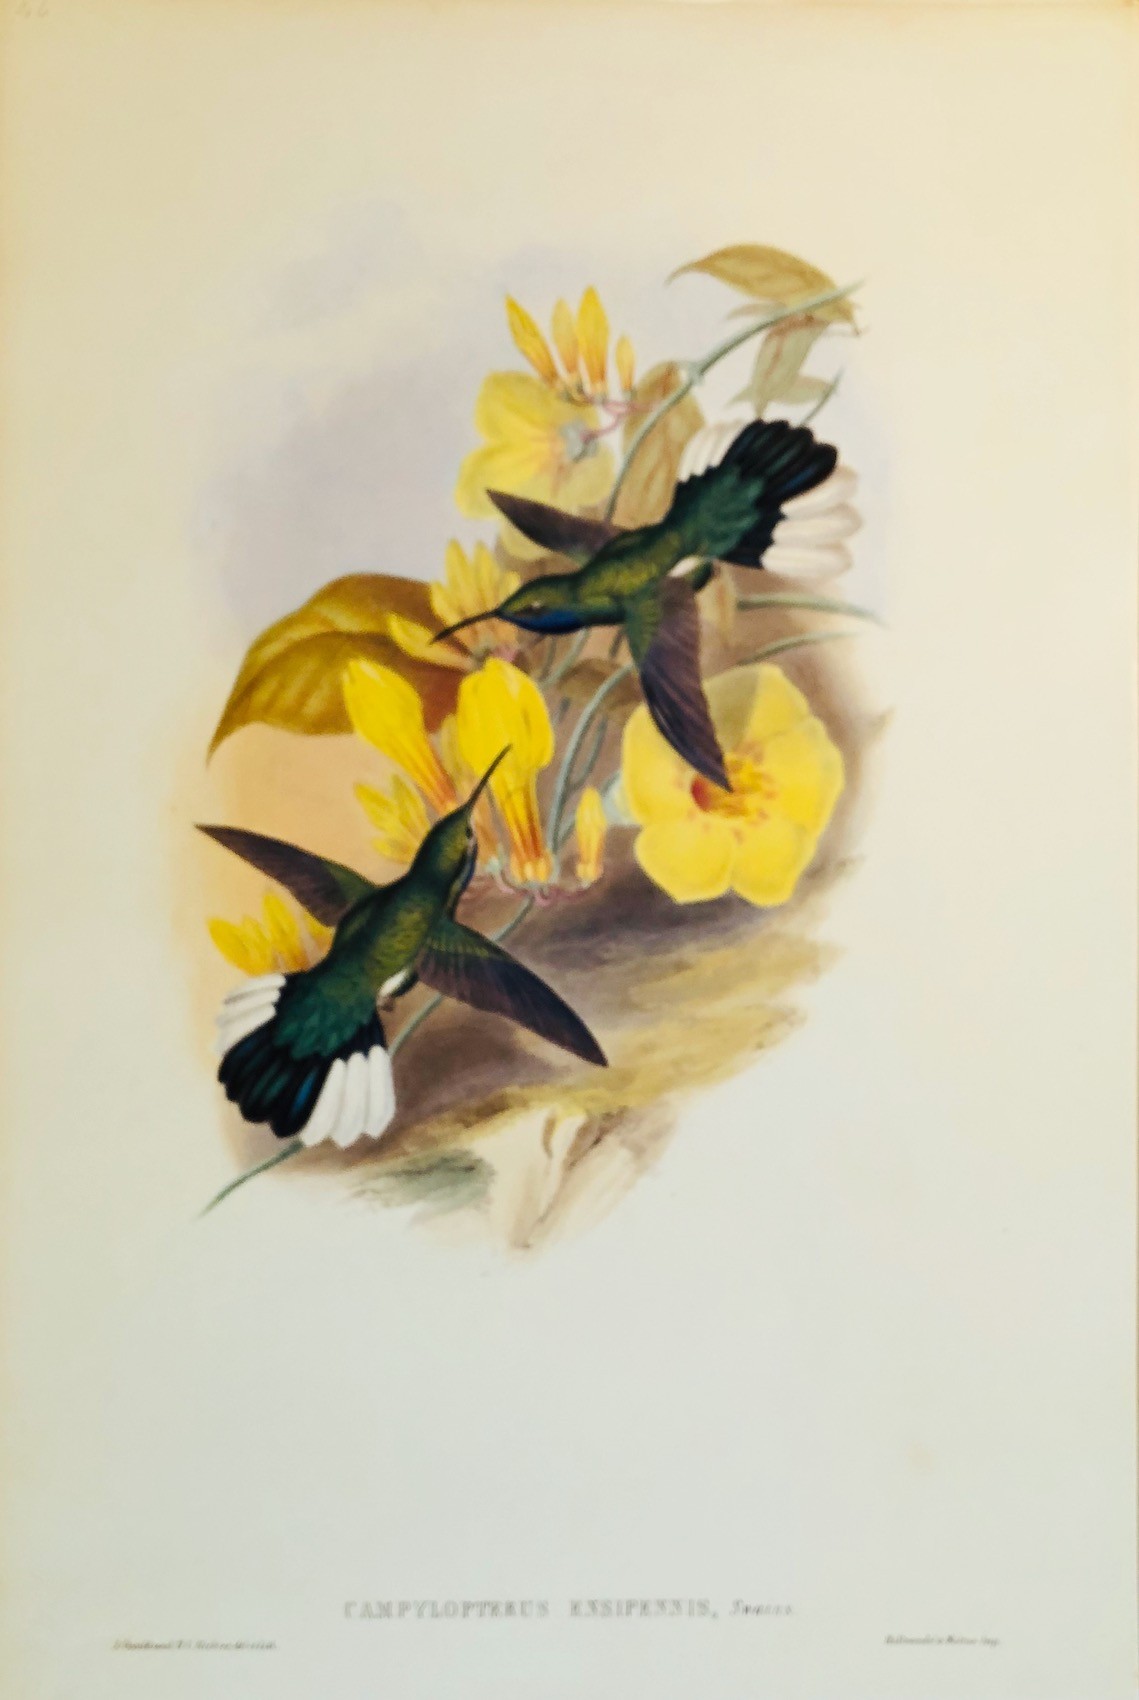 Campylopterus Ensipennis